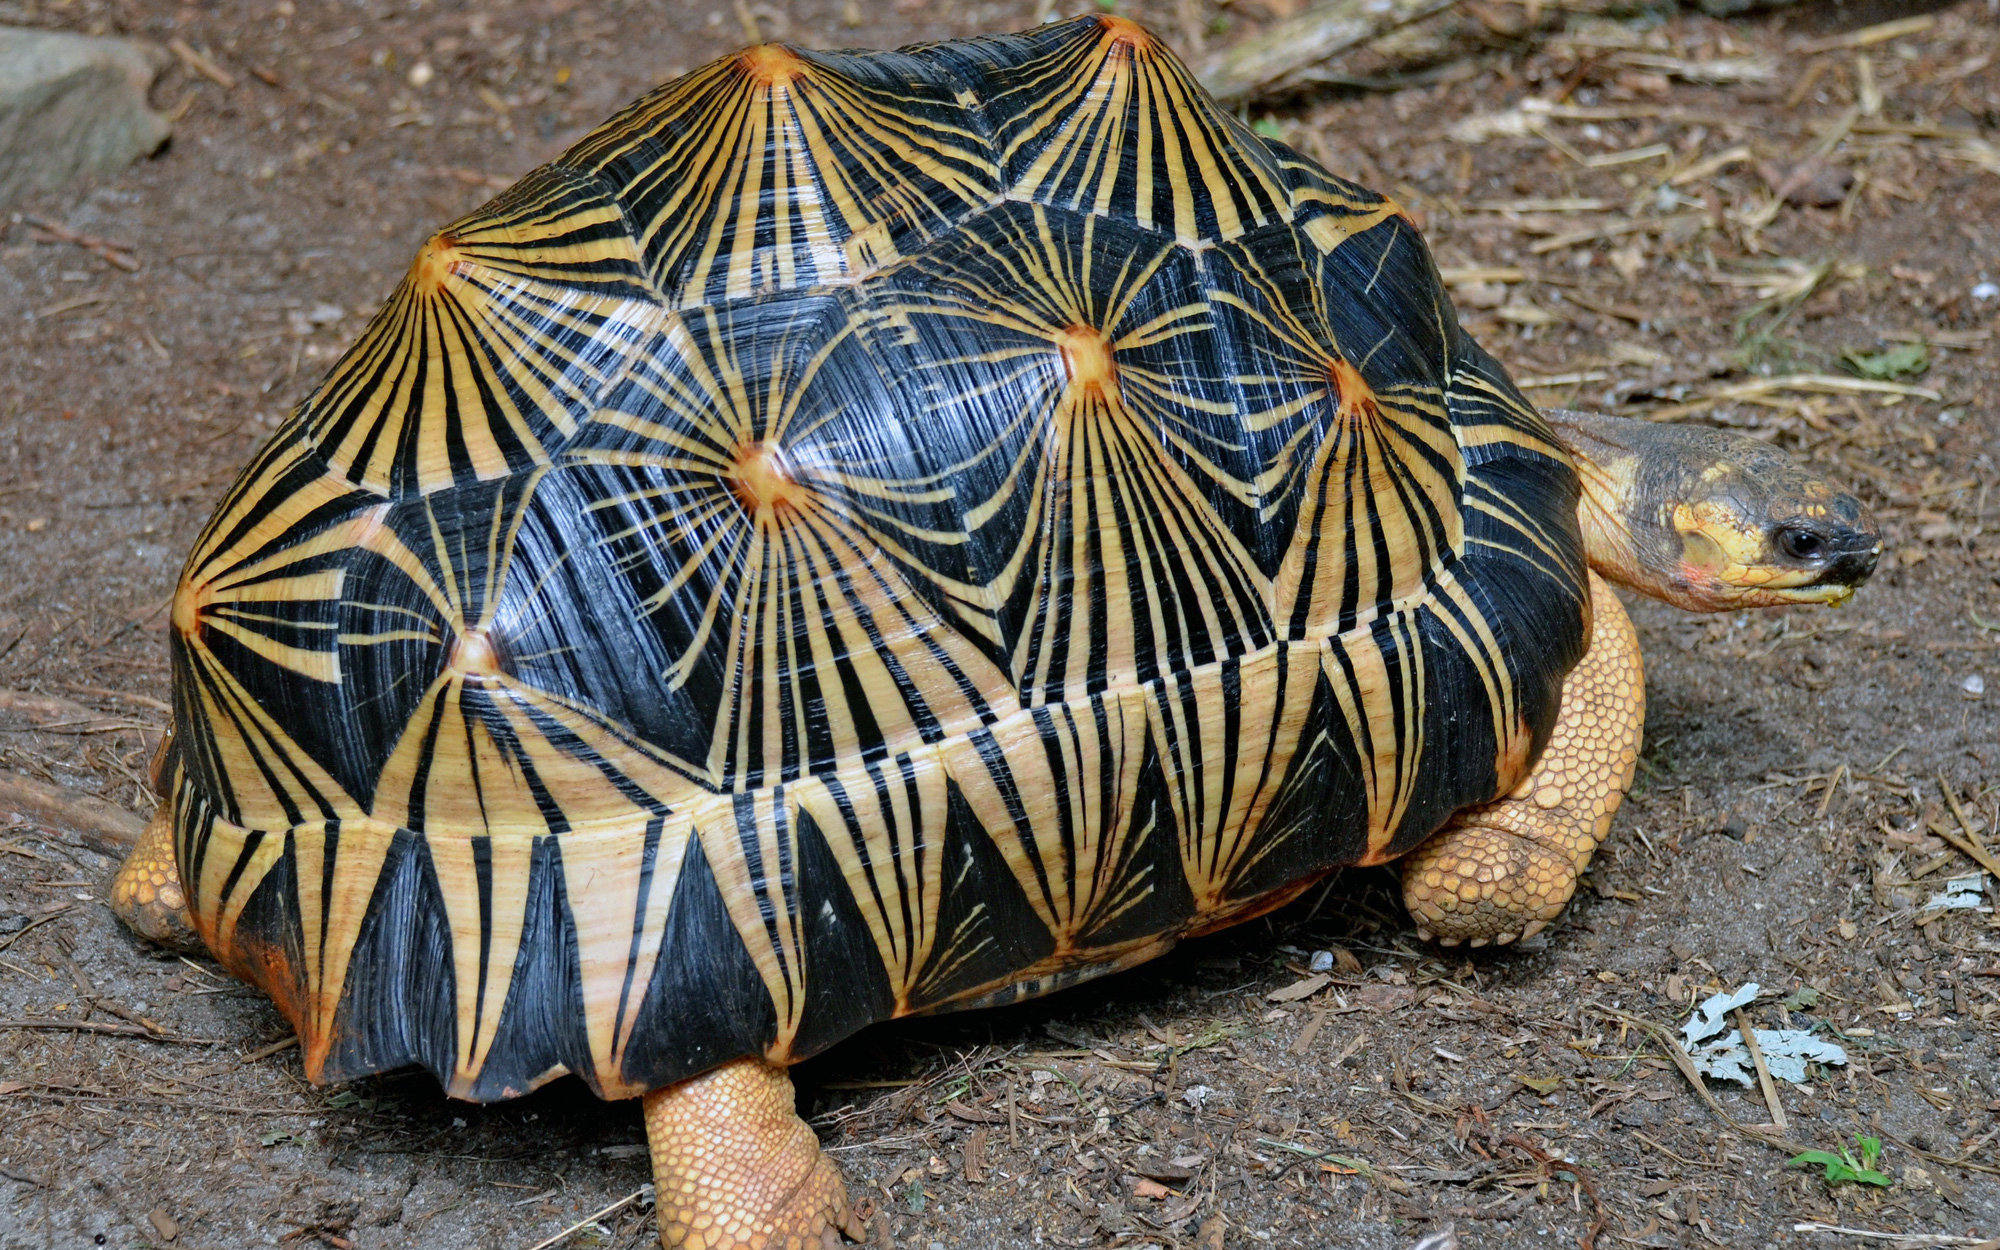 Rùa bức xạ - loài rùa đẹp nhất hành tinh đứng trên bờ vực tuyệt chủng